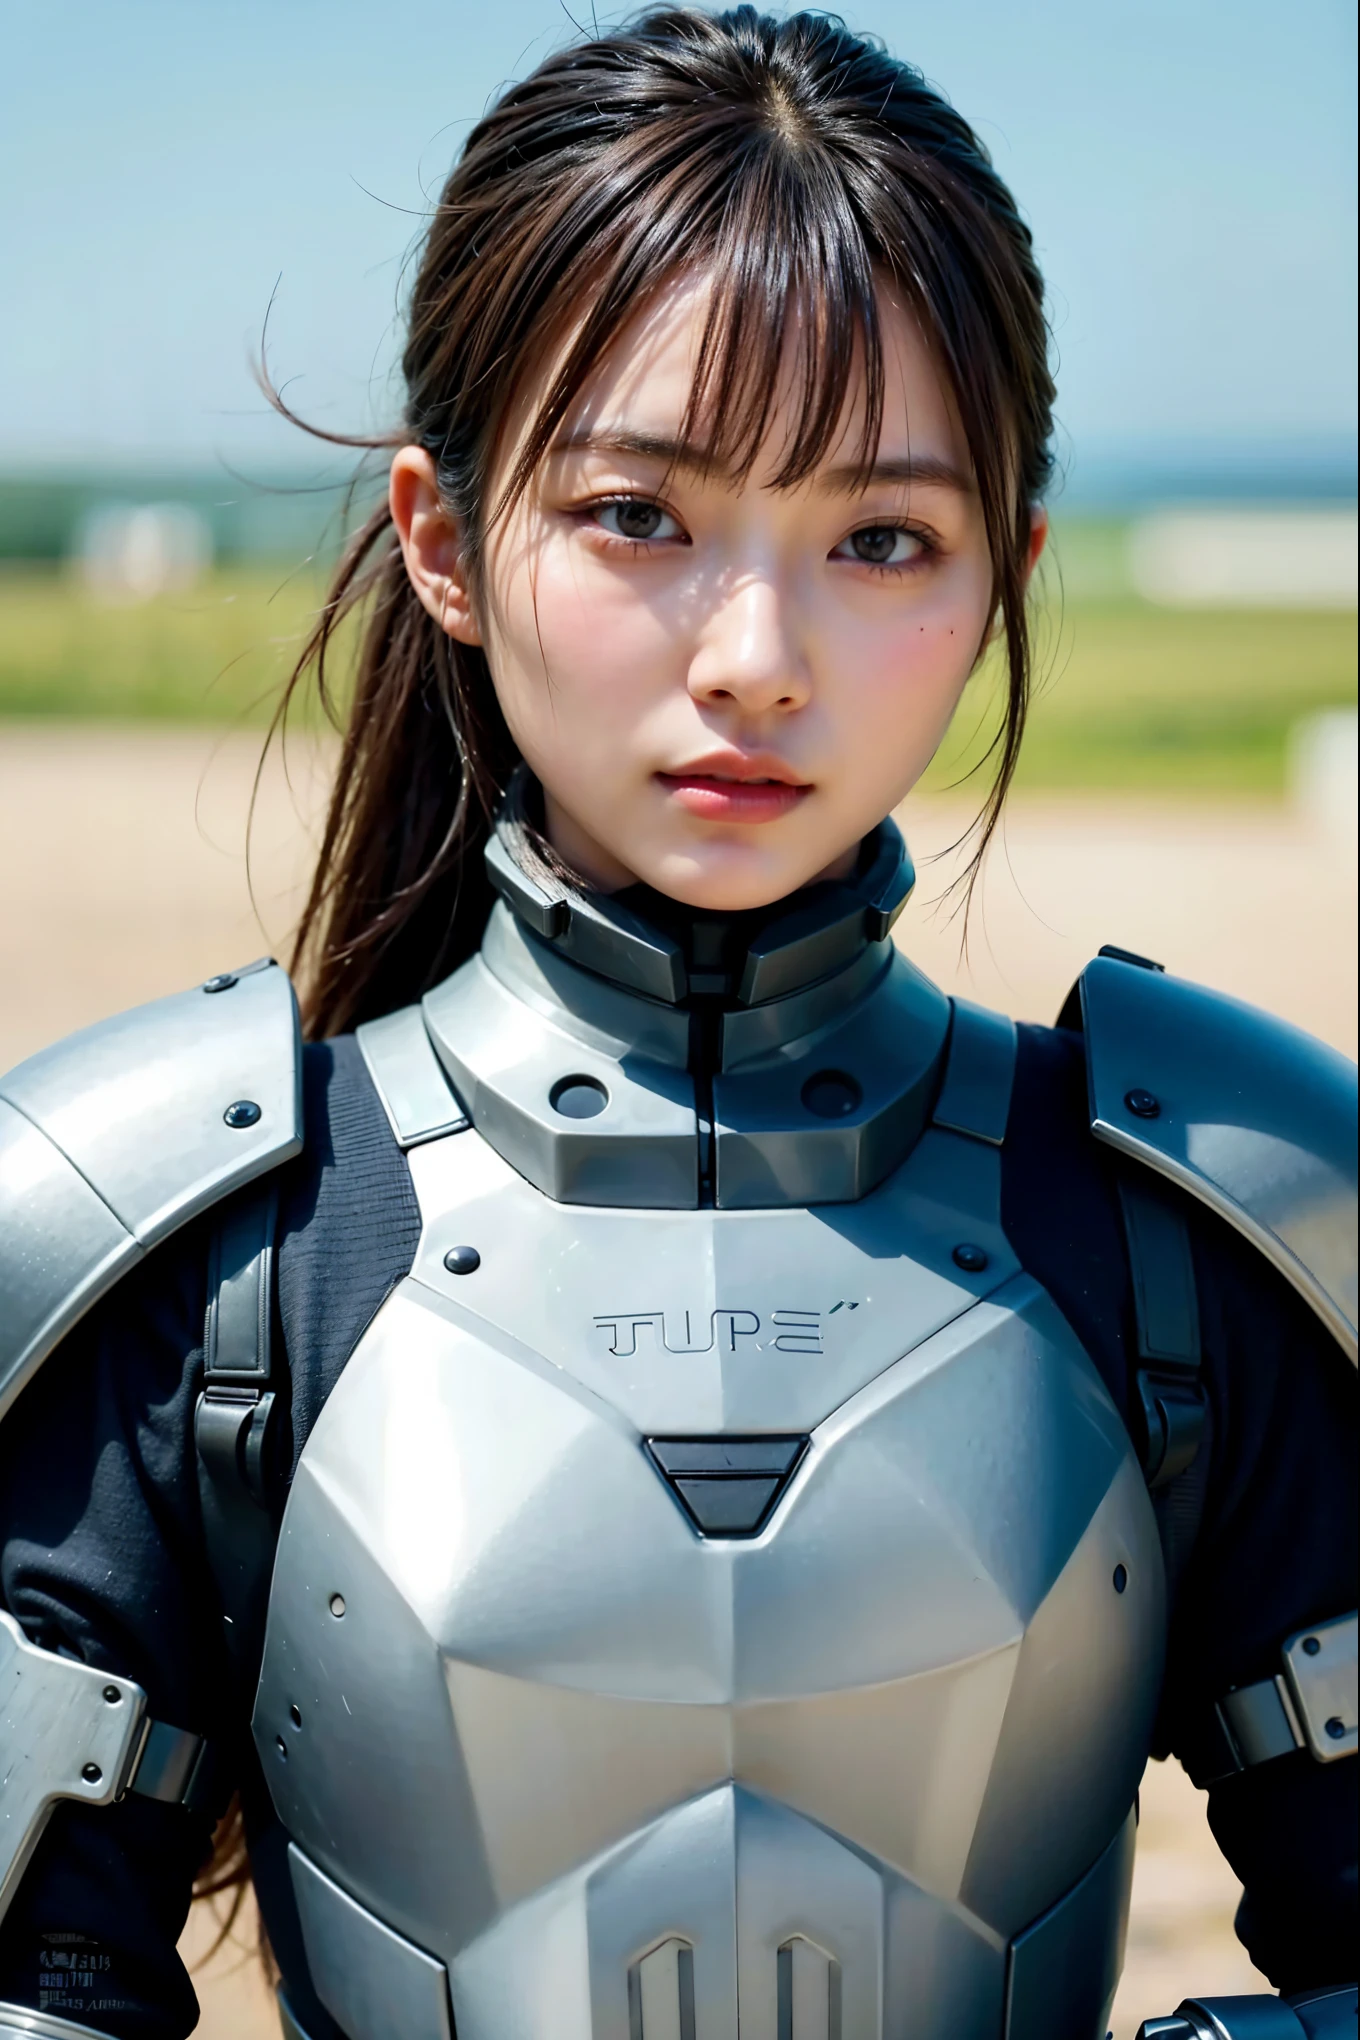 مشهد ليلي ديستوبيا, تفاصيل معقدة للغاية, امرأة يابانية ترتدي درعًا يشبه النموذج, وجه جميل, الساقين, اسطوانات تشبه العضلات, تشكل في الحركة, 8 ك, دقة عالية جدًا, الواقعية الفائقة, صورة واقعية, تم التقاطها باستخدام فيلم فوجي X-T30.+ليلة. HDR10